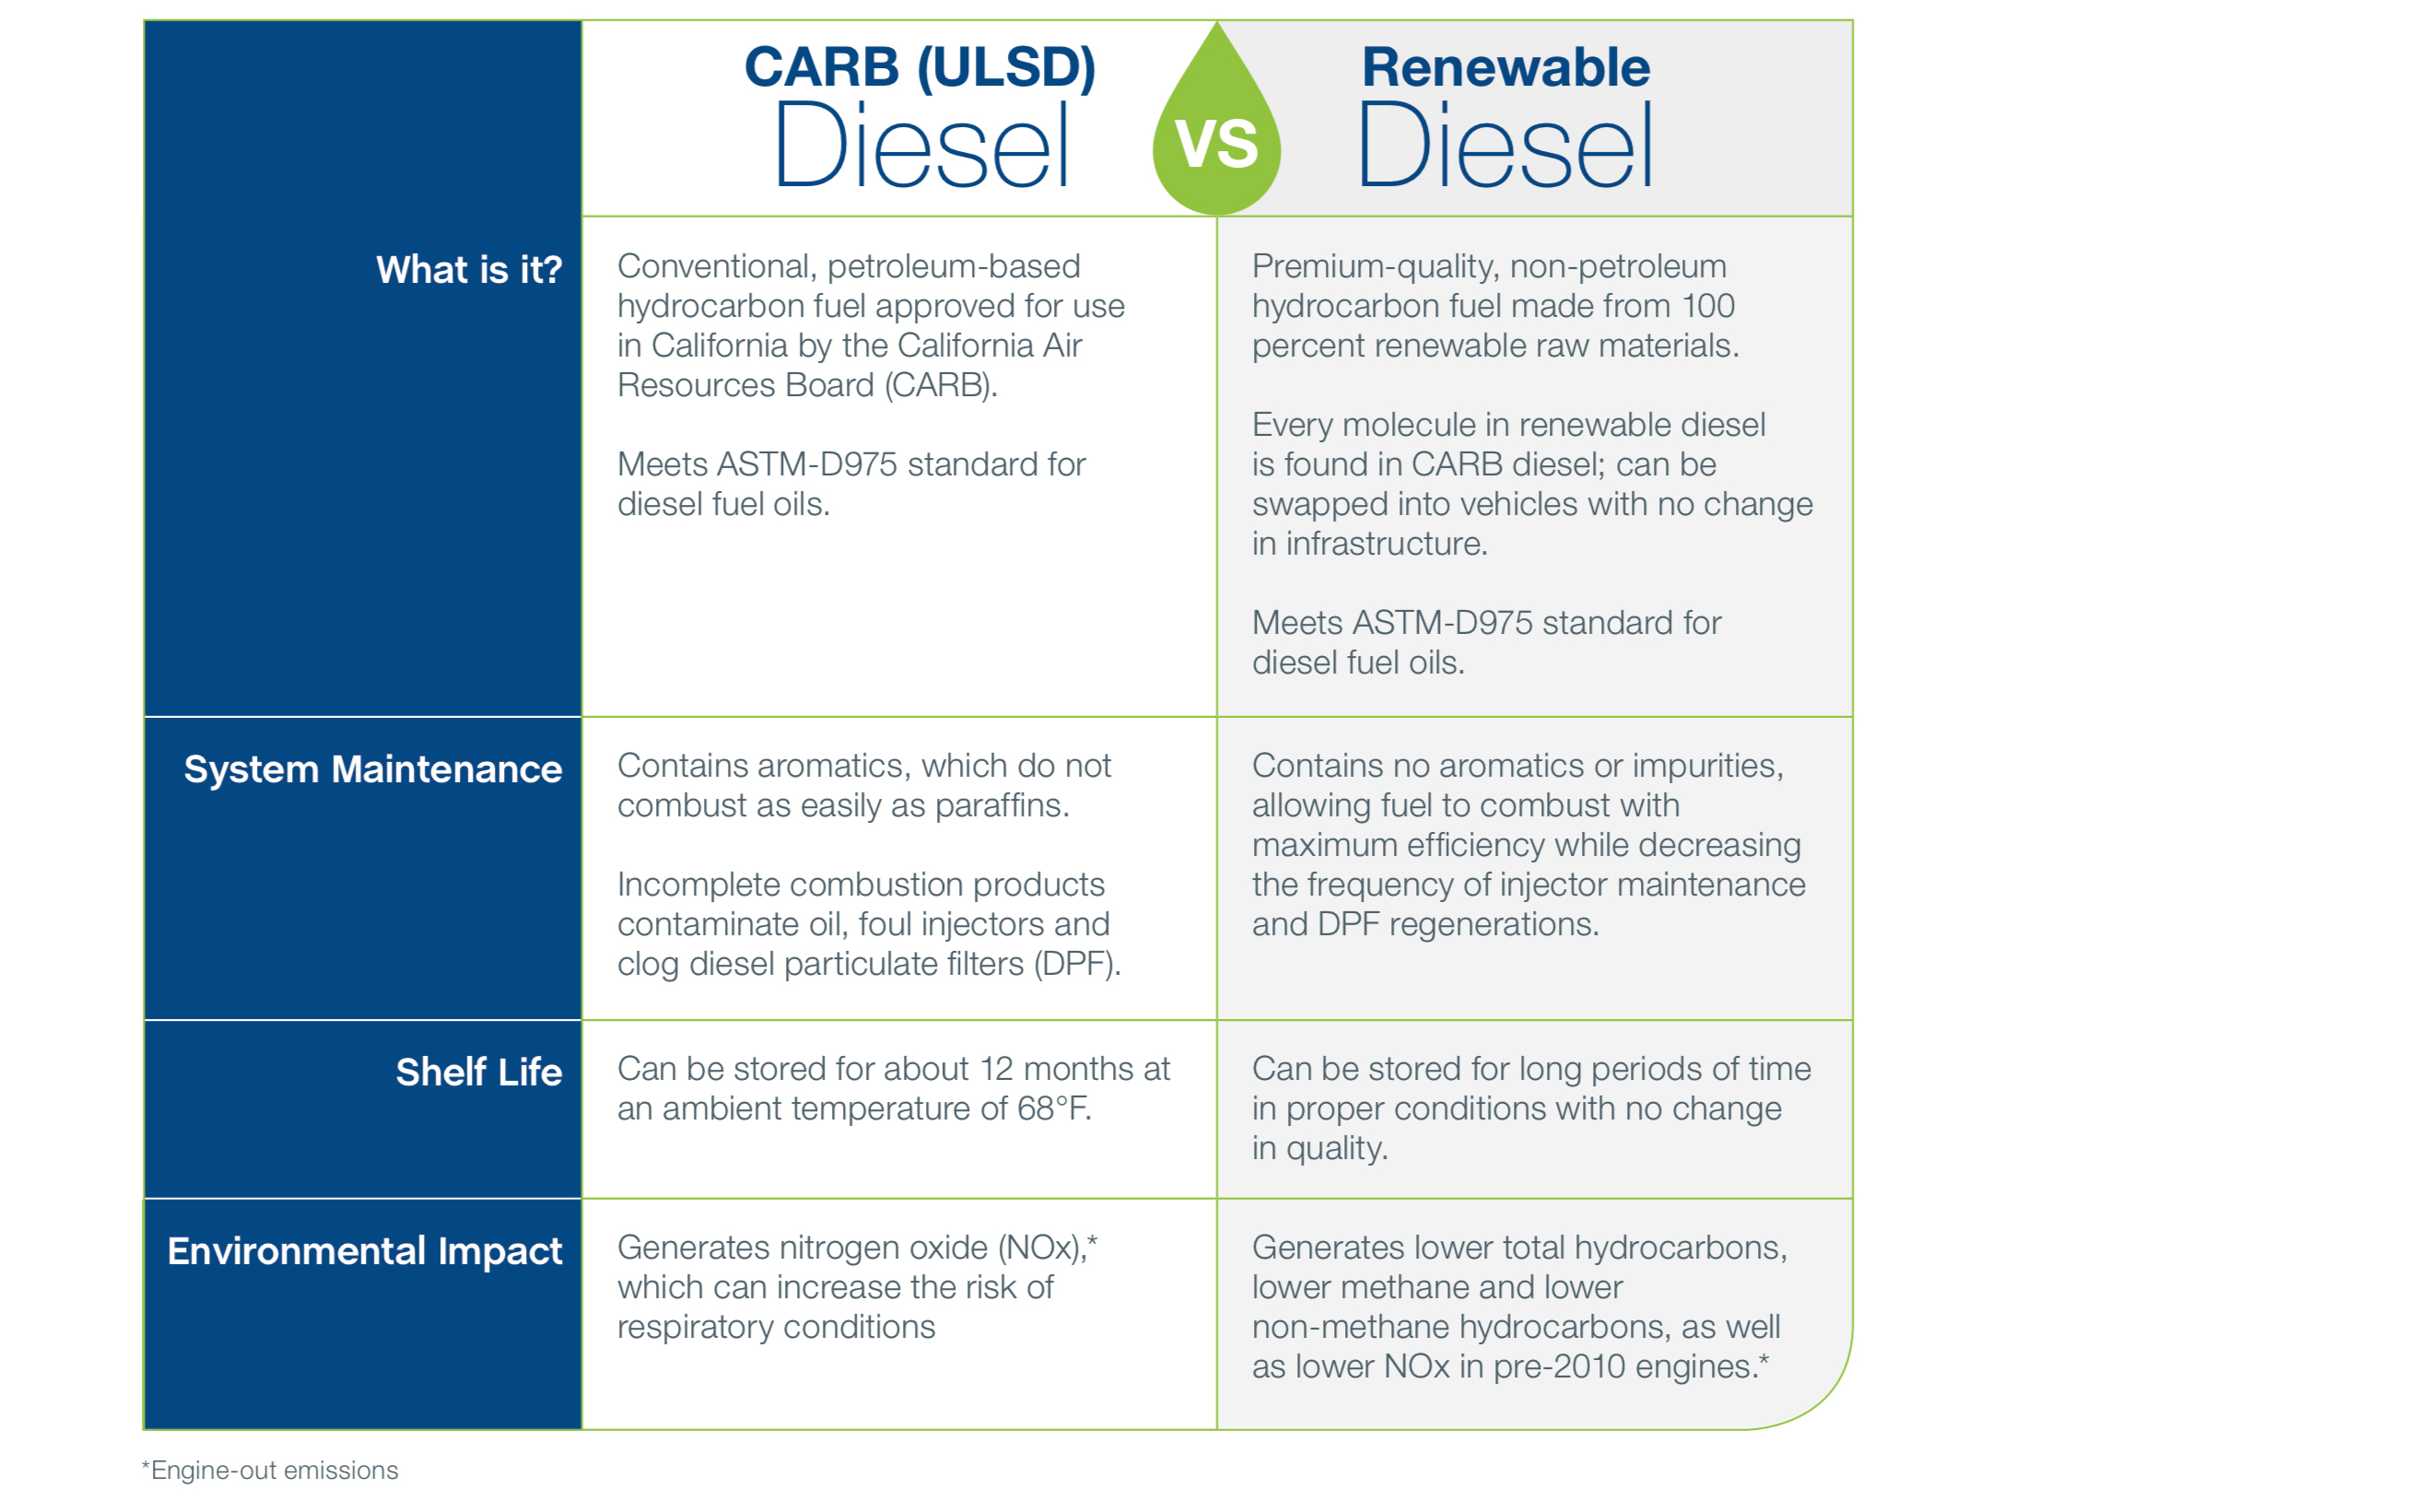 Carb vs Renewable